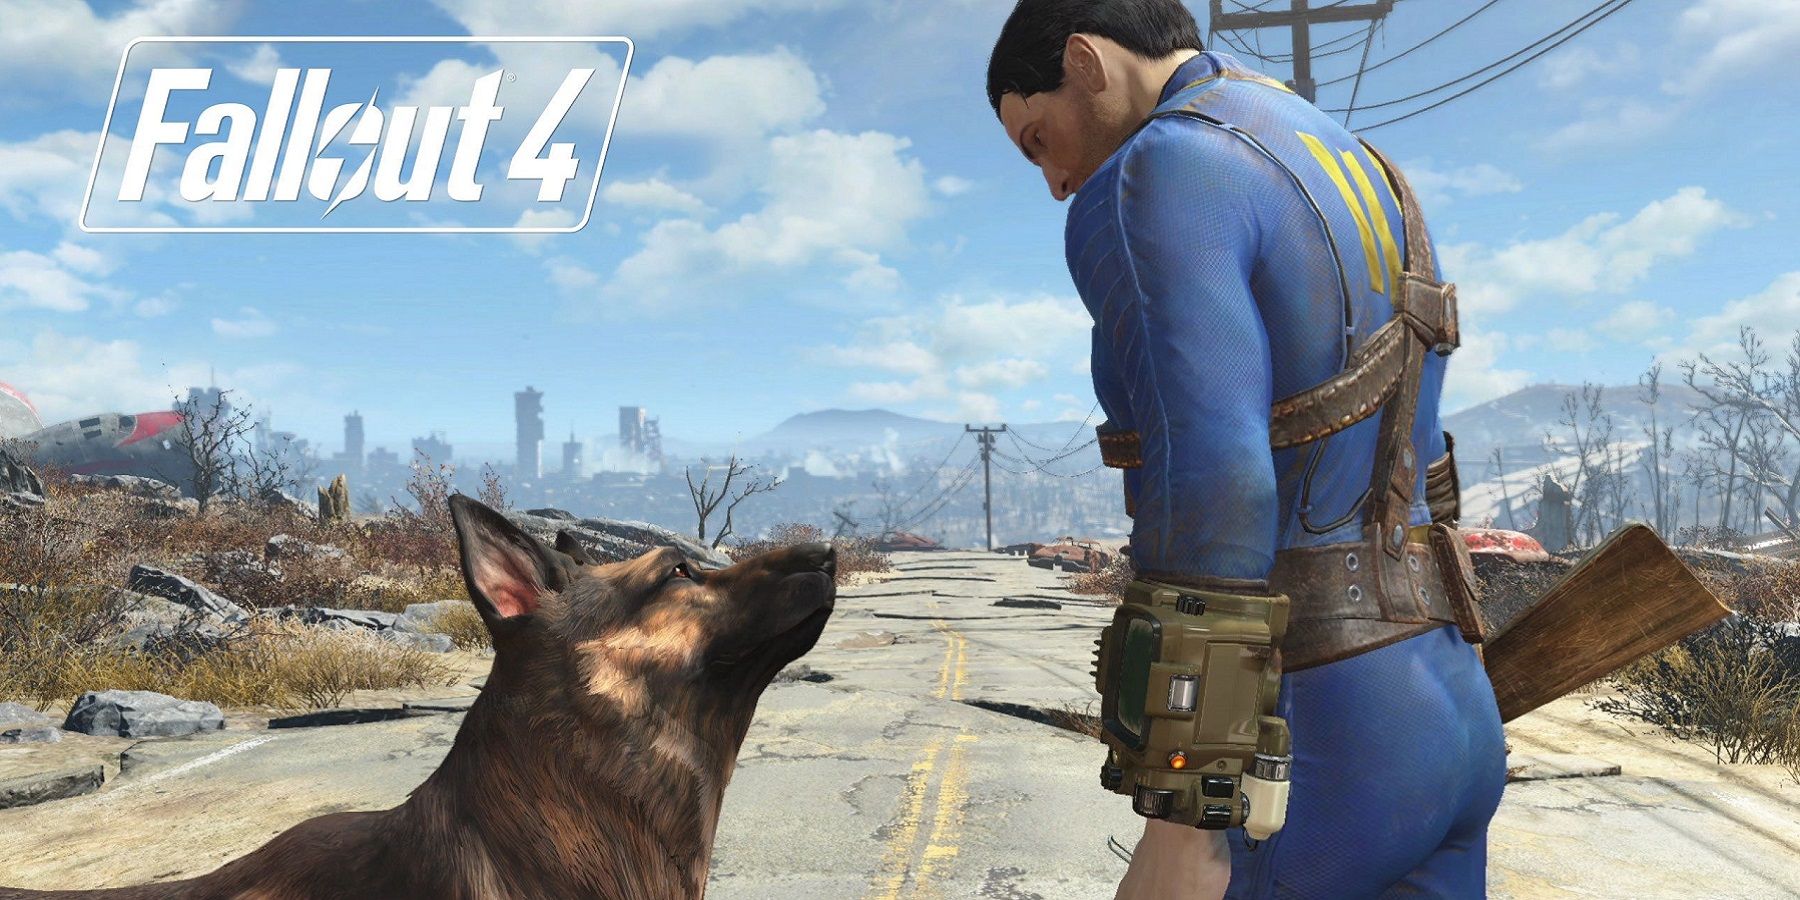 Image de Fallout 4 montrant l'habitant de l'abri regardant Dogmeat.